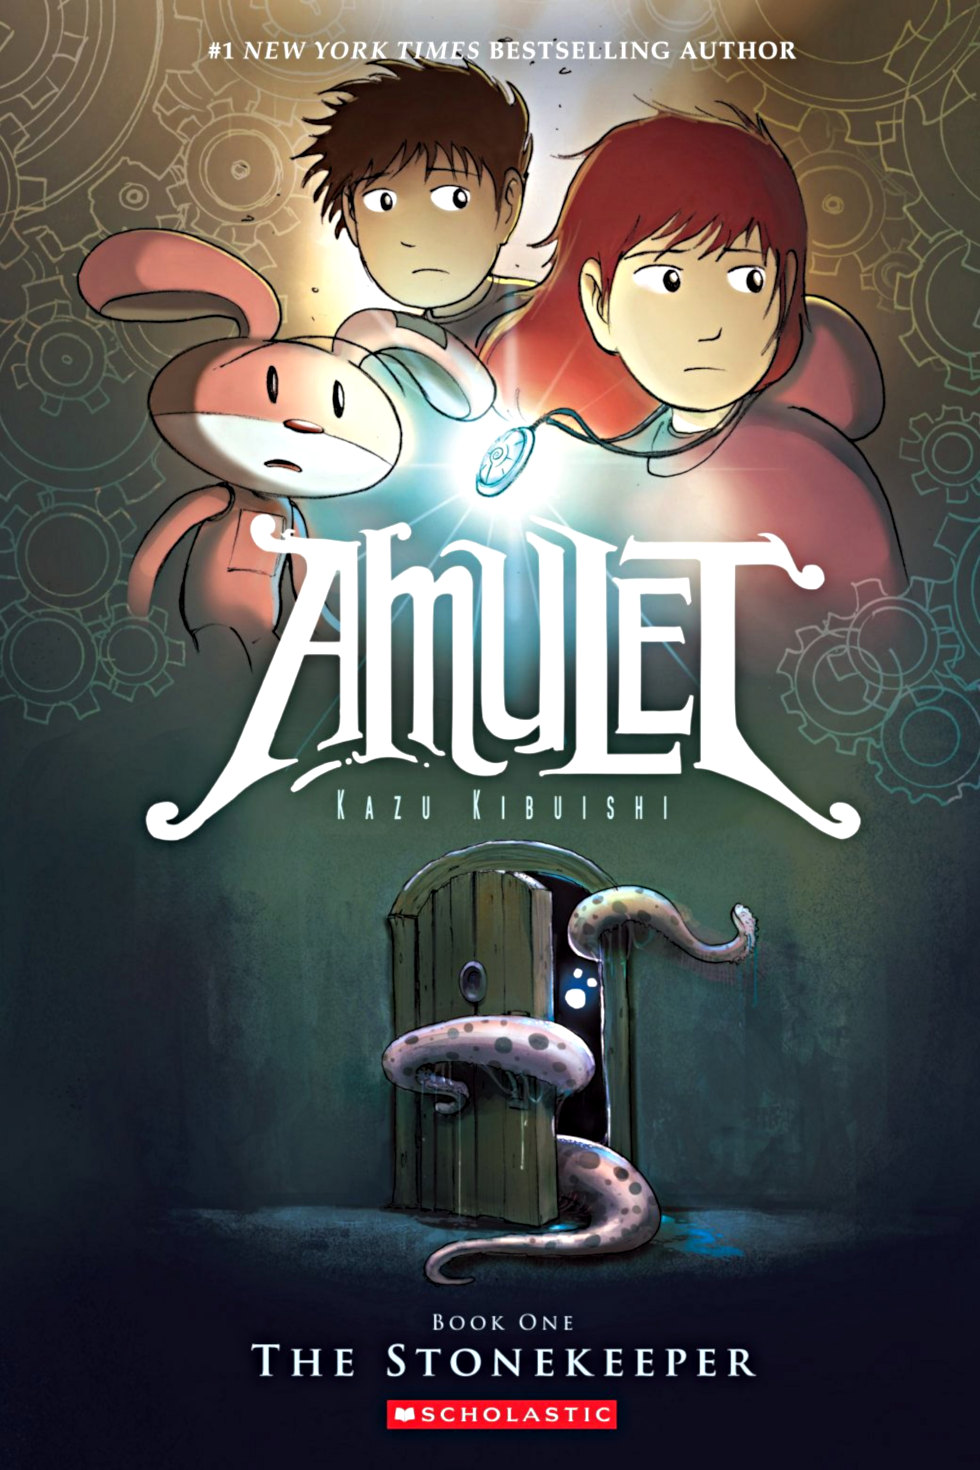 cover page of amulet 1 stonekeeper graphic novel by kazu kibuishi